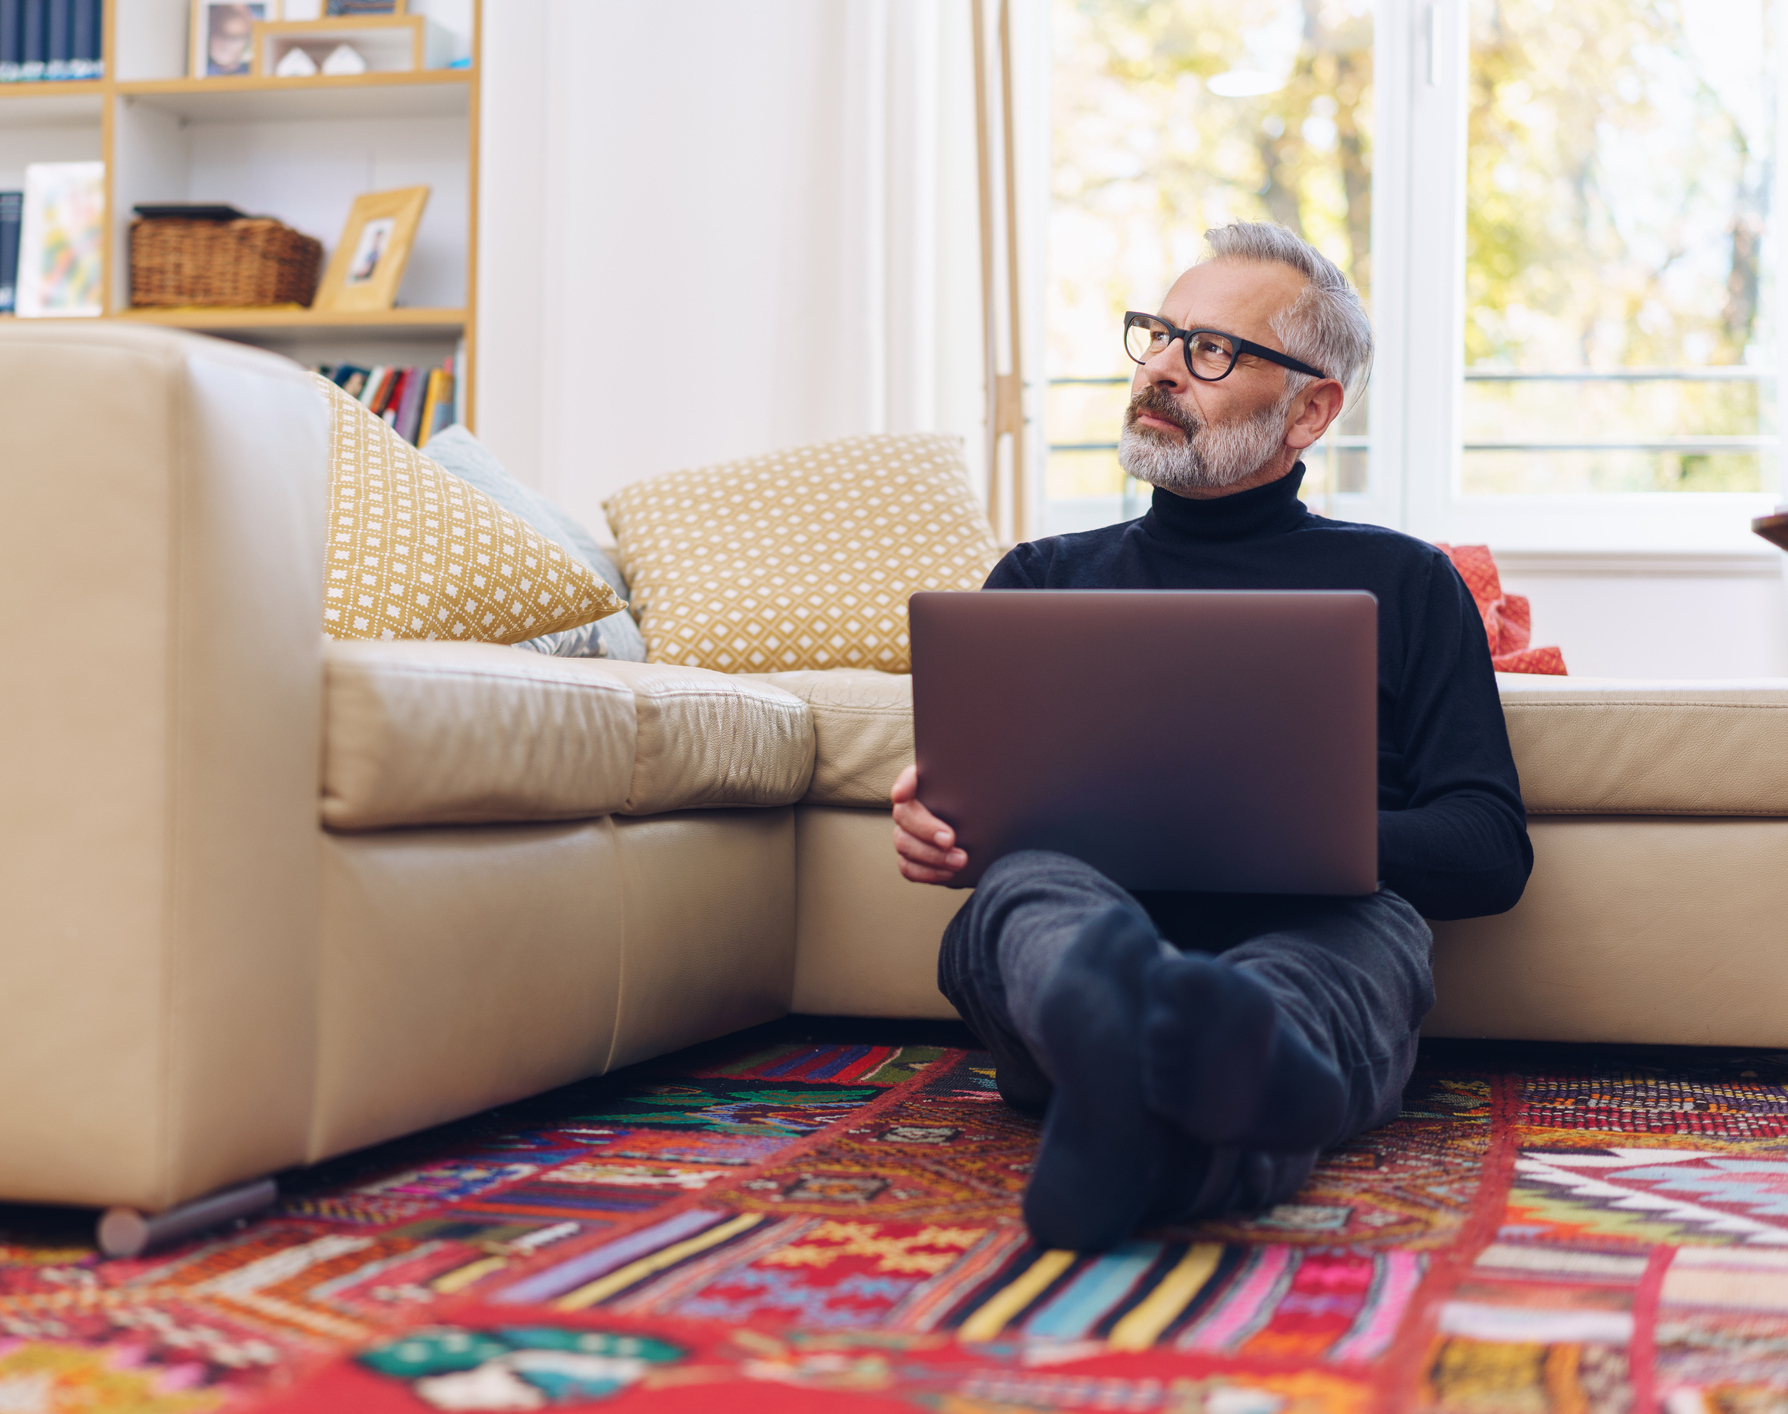 Ein Mann arbeitet auf dem Boden eines Wohnzimmers auf einem Laptop